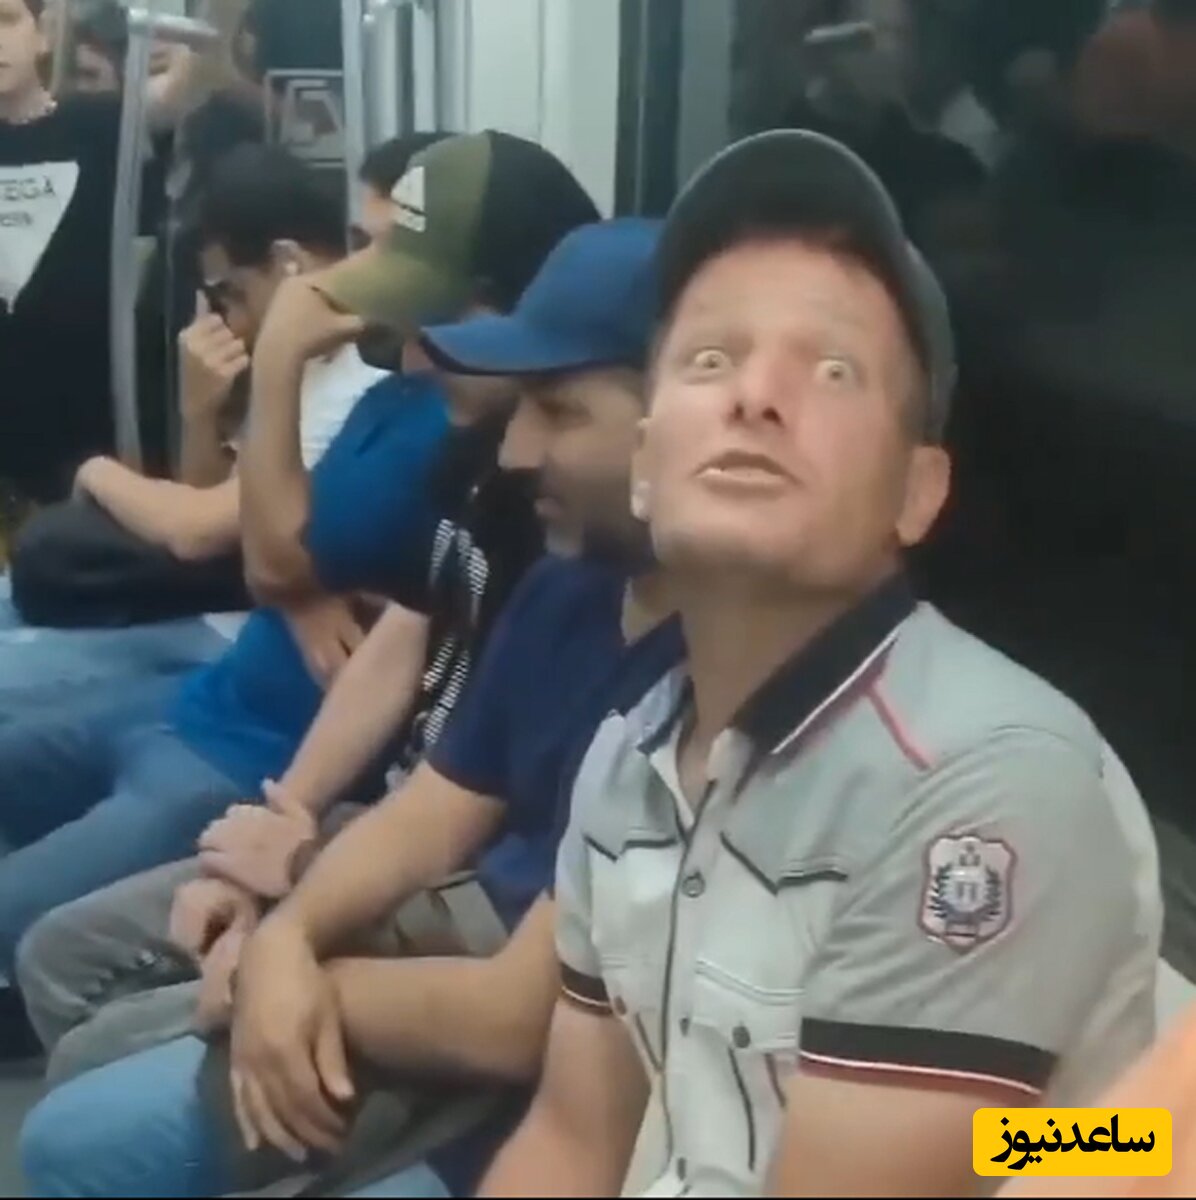 (فیلم) باز هم سوژه ای جدید در متروی تهران با آهنگ دیشب اومدم خونتون نبودی، راستشو بگو کجا رفته بودی!